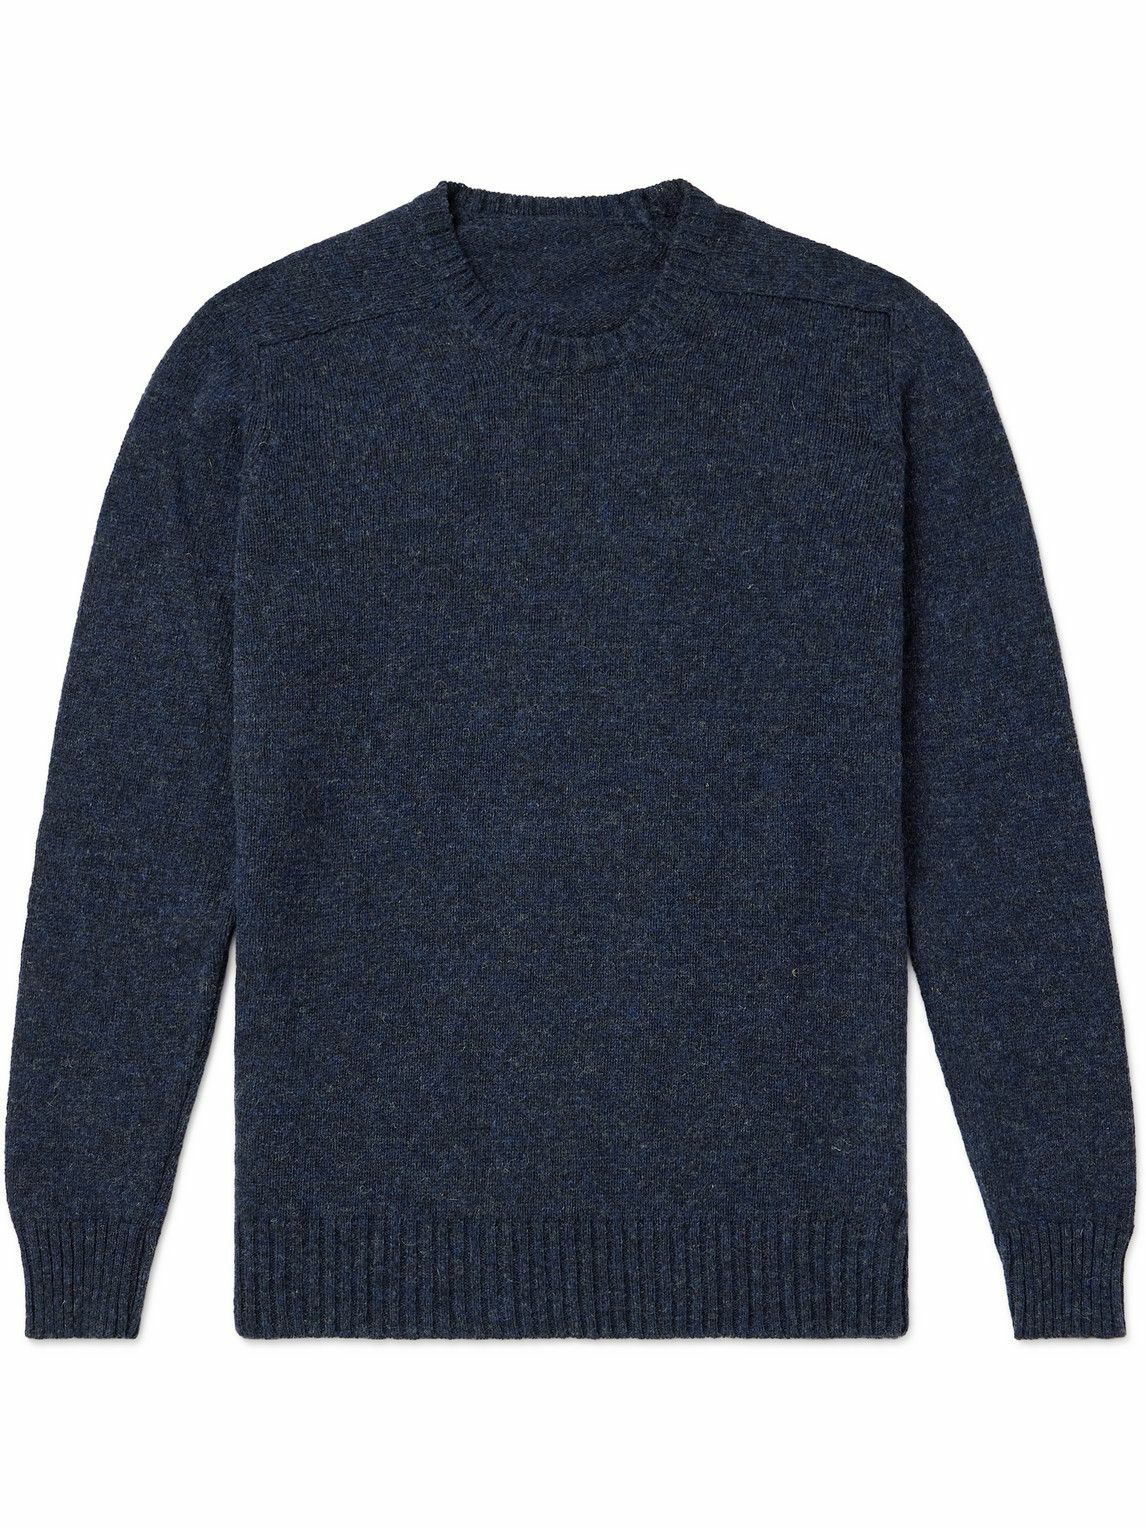 Anderson & Sheppard - Shetland Wool Sweater - Blue Anderson & Sheppard